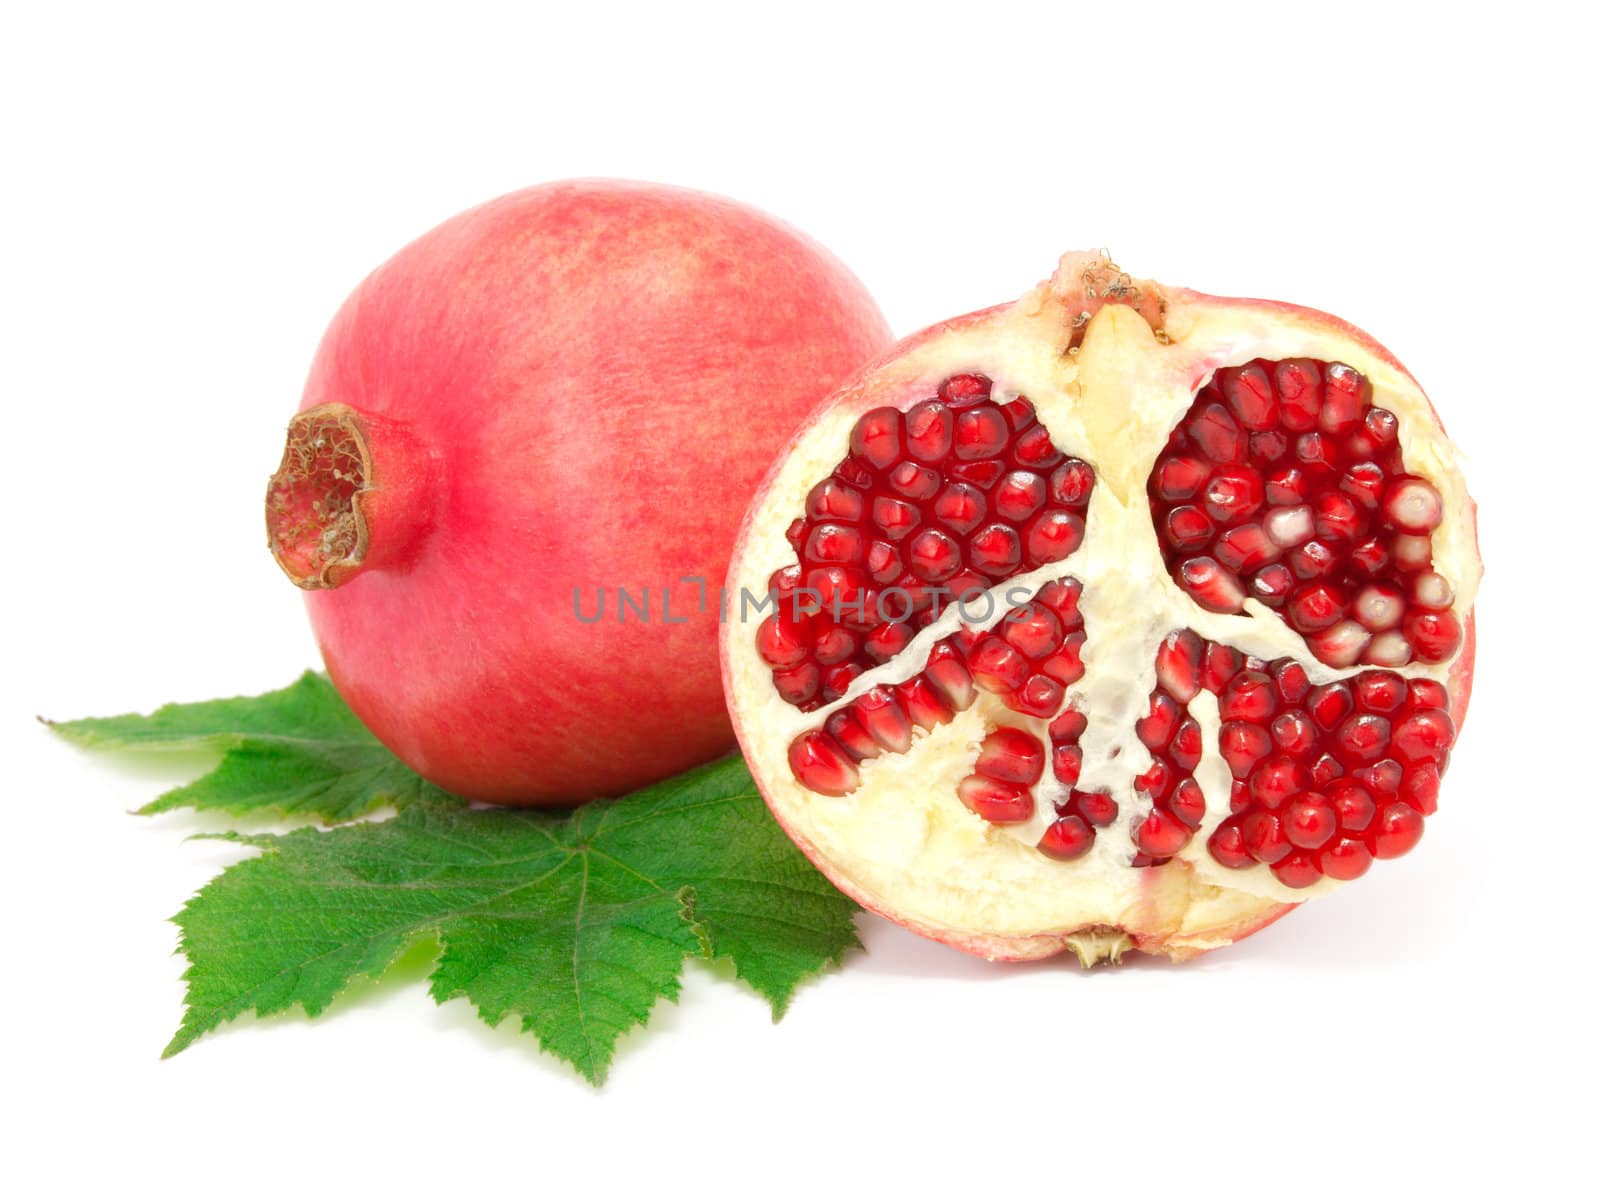 Pomegranate fruit, isolated on white background  by motorolka